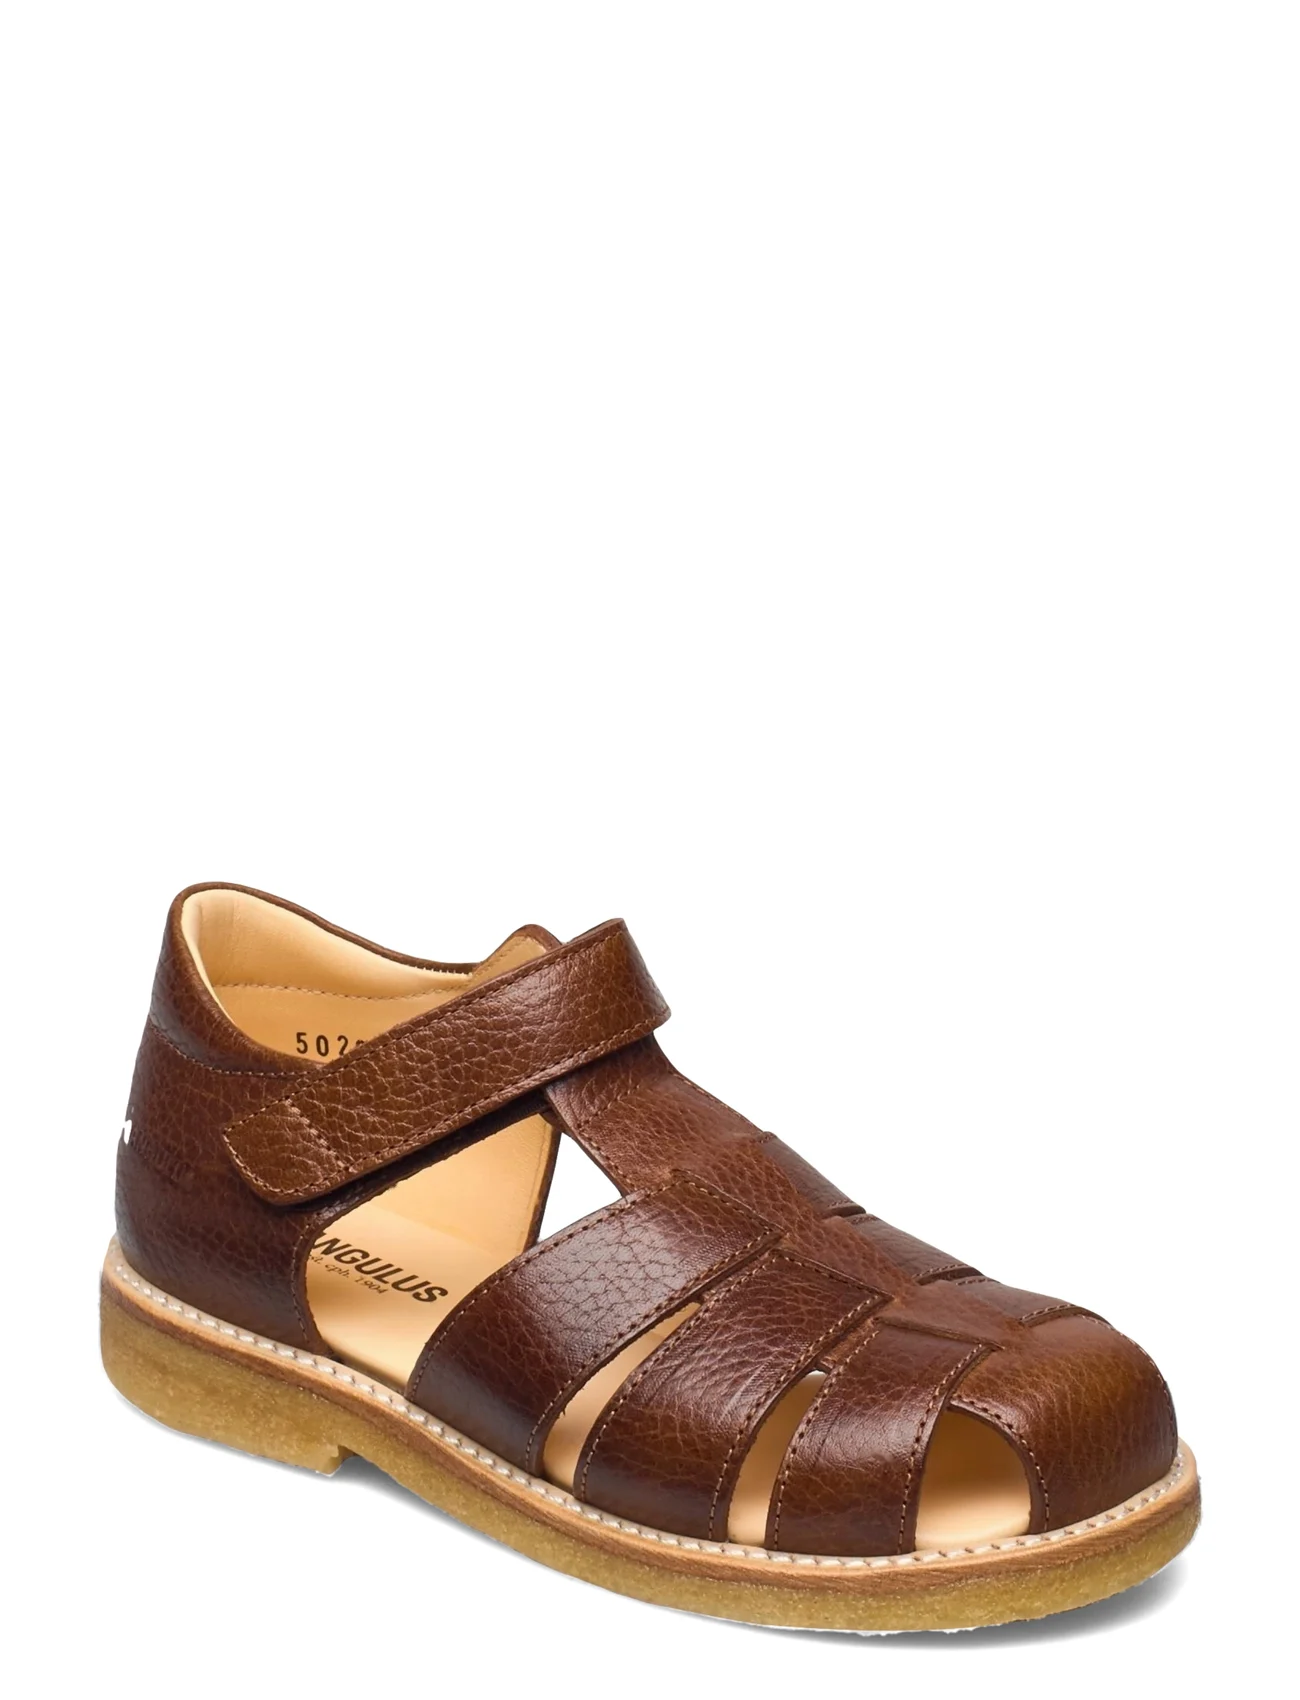 ANGULUS - Sandals - flat - closed toe - - summer savings - 2509 cognac - 0